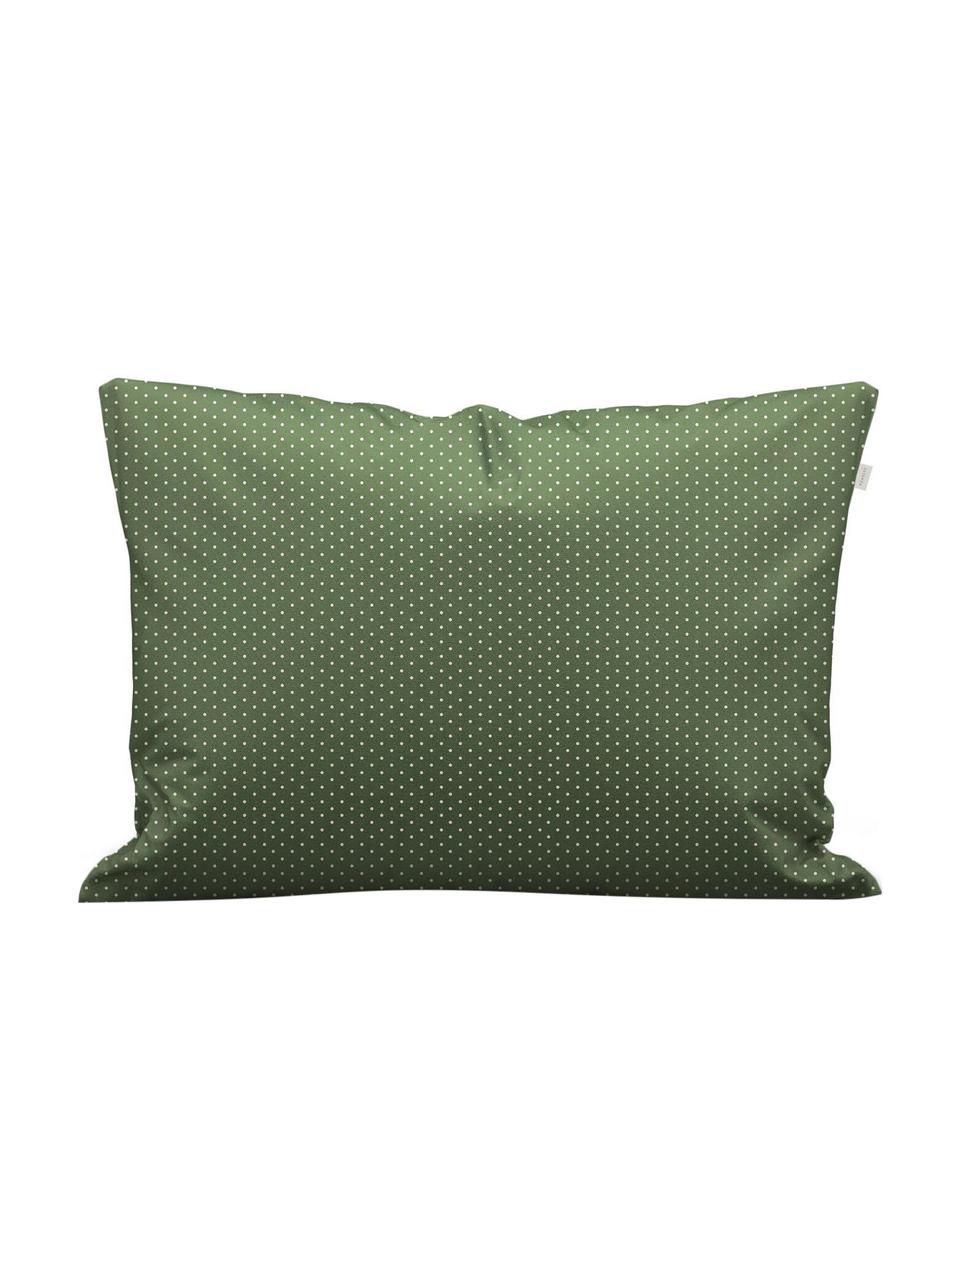 Pościel z satyny bawełnianej Merly, Zielony, beżowy, 135 x 200 cm + 1 poduszka 80 x 80 cm